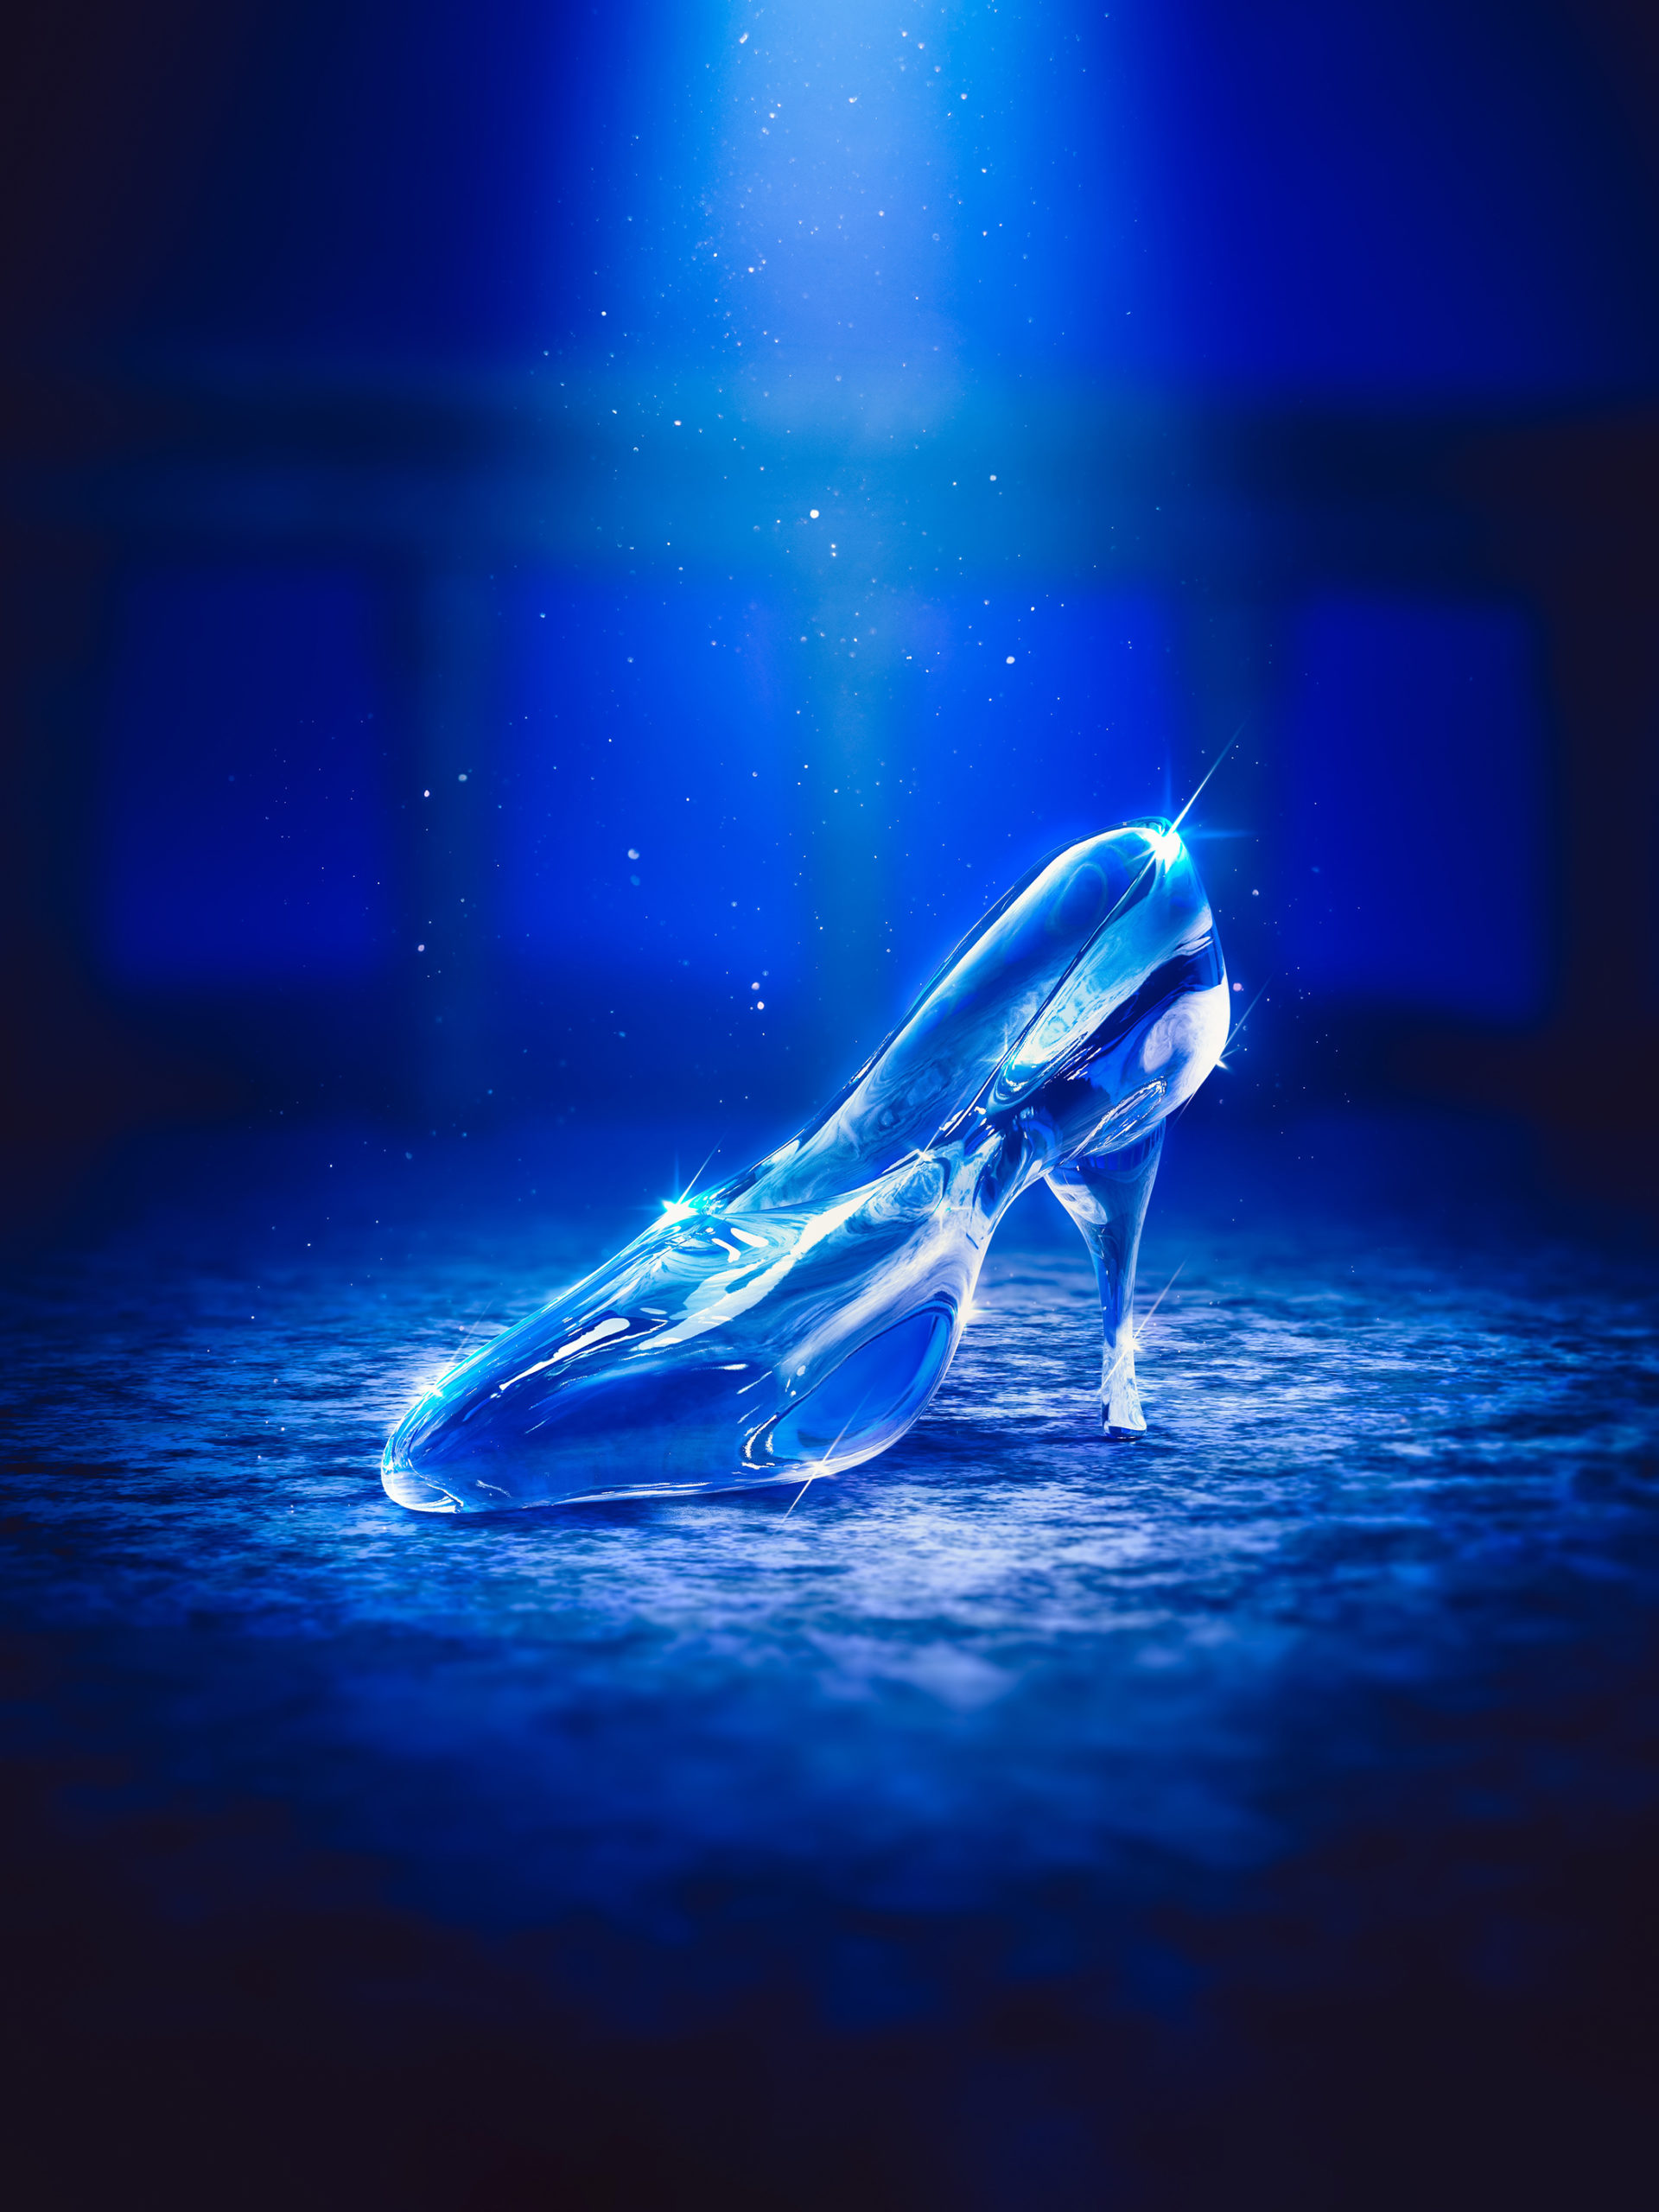 digital illustration of glass slipper